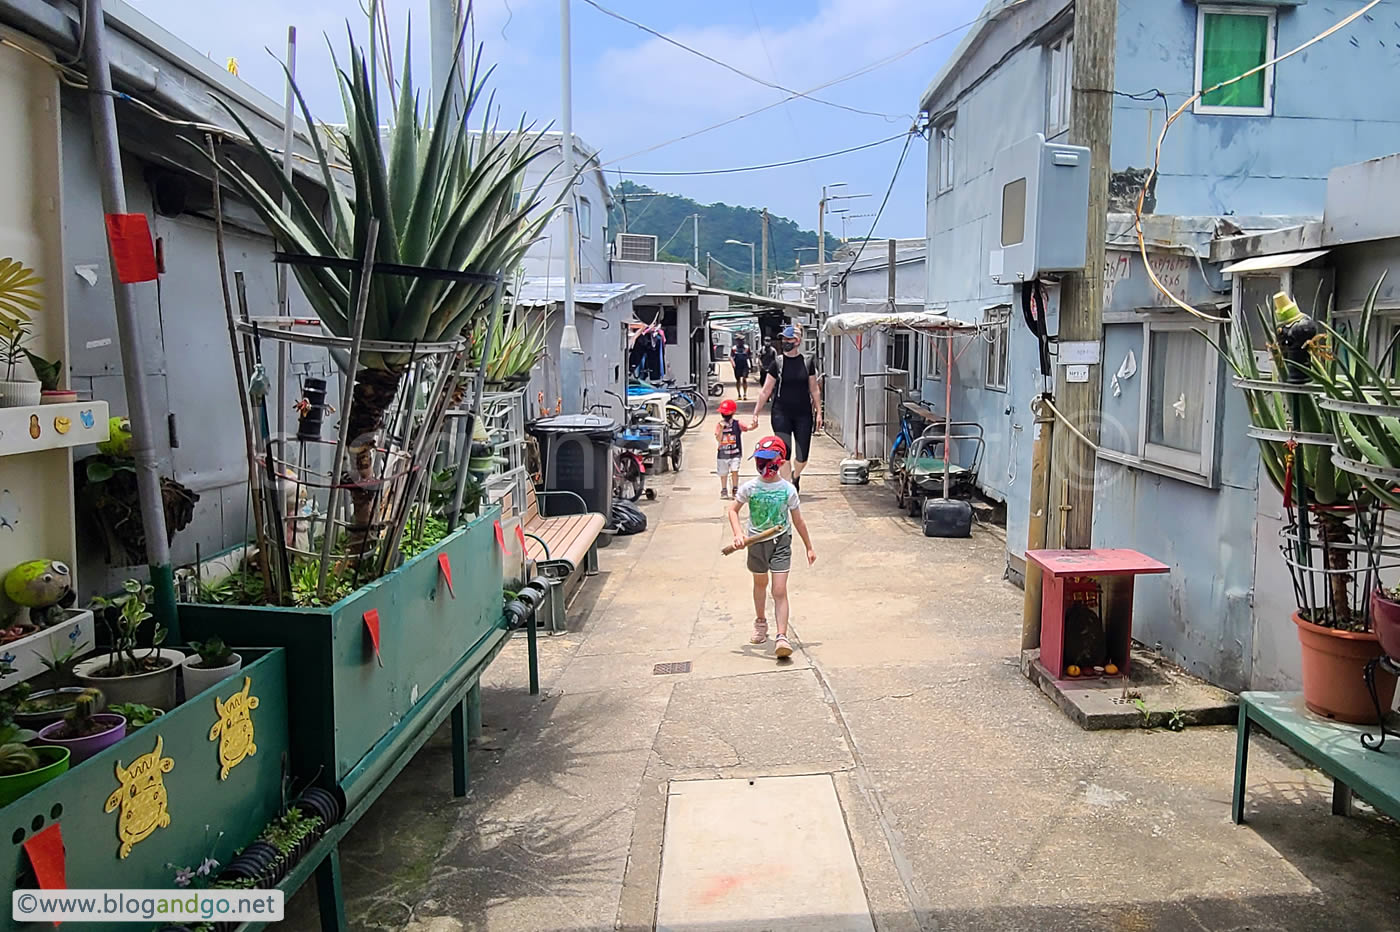 Tung O Trail - The 'Streets' of Tai O